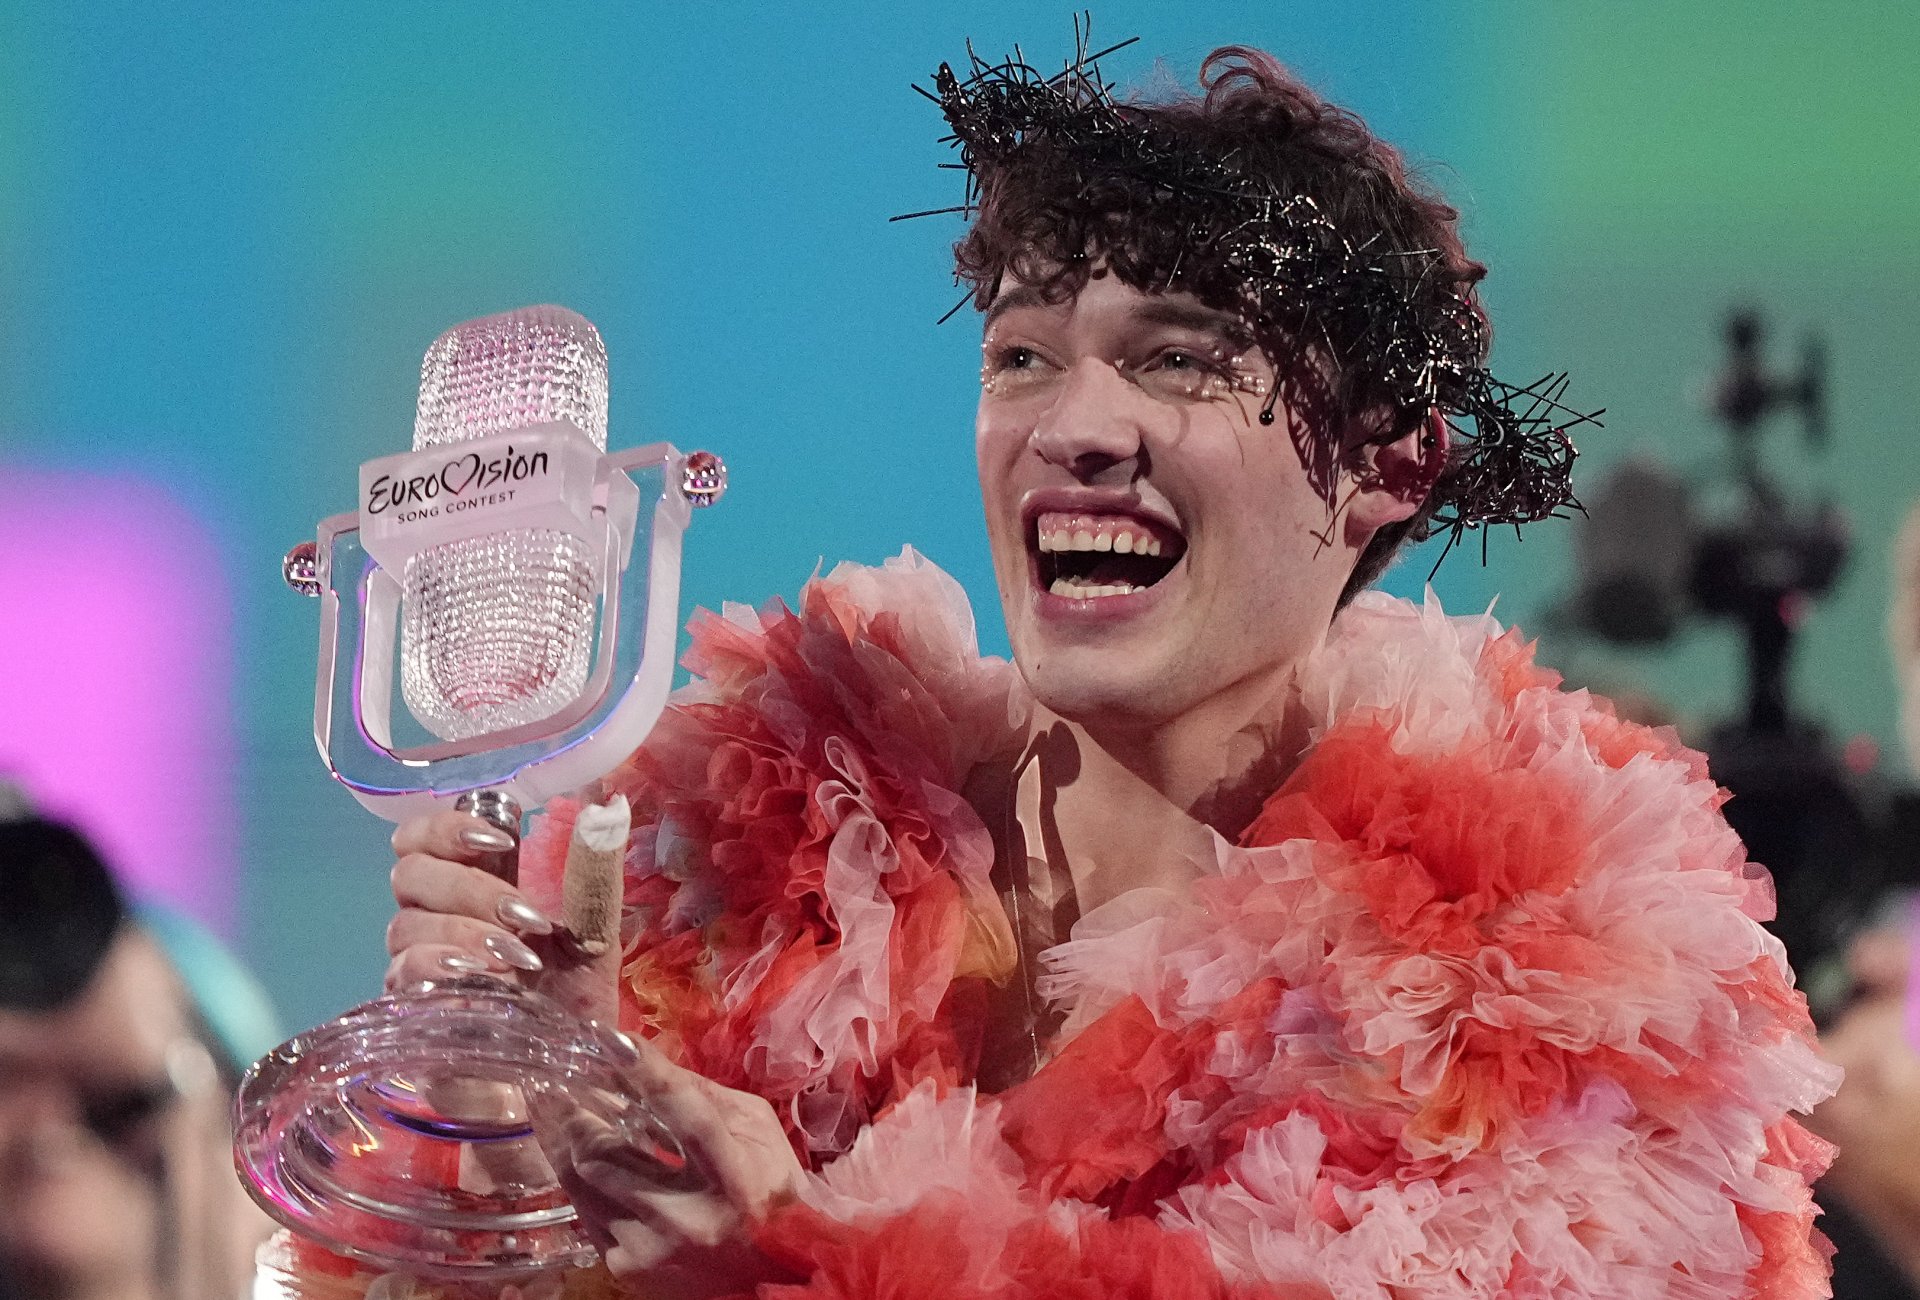 Немо спечели конкурса с "изключително лична песен" за това, че е небинарен човек 